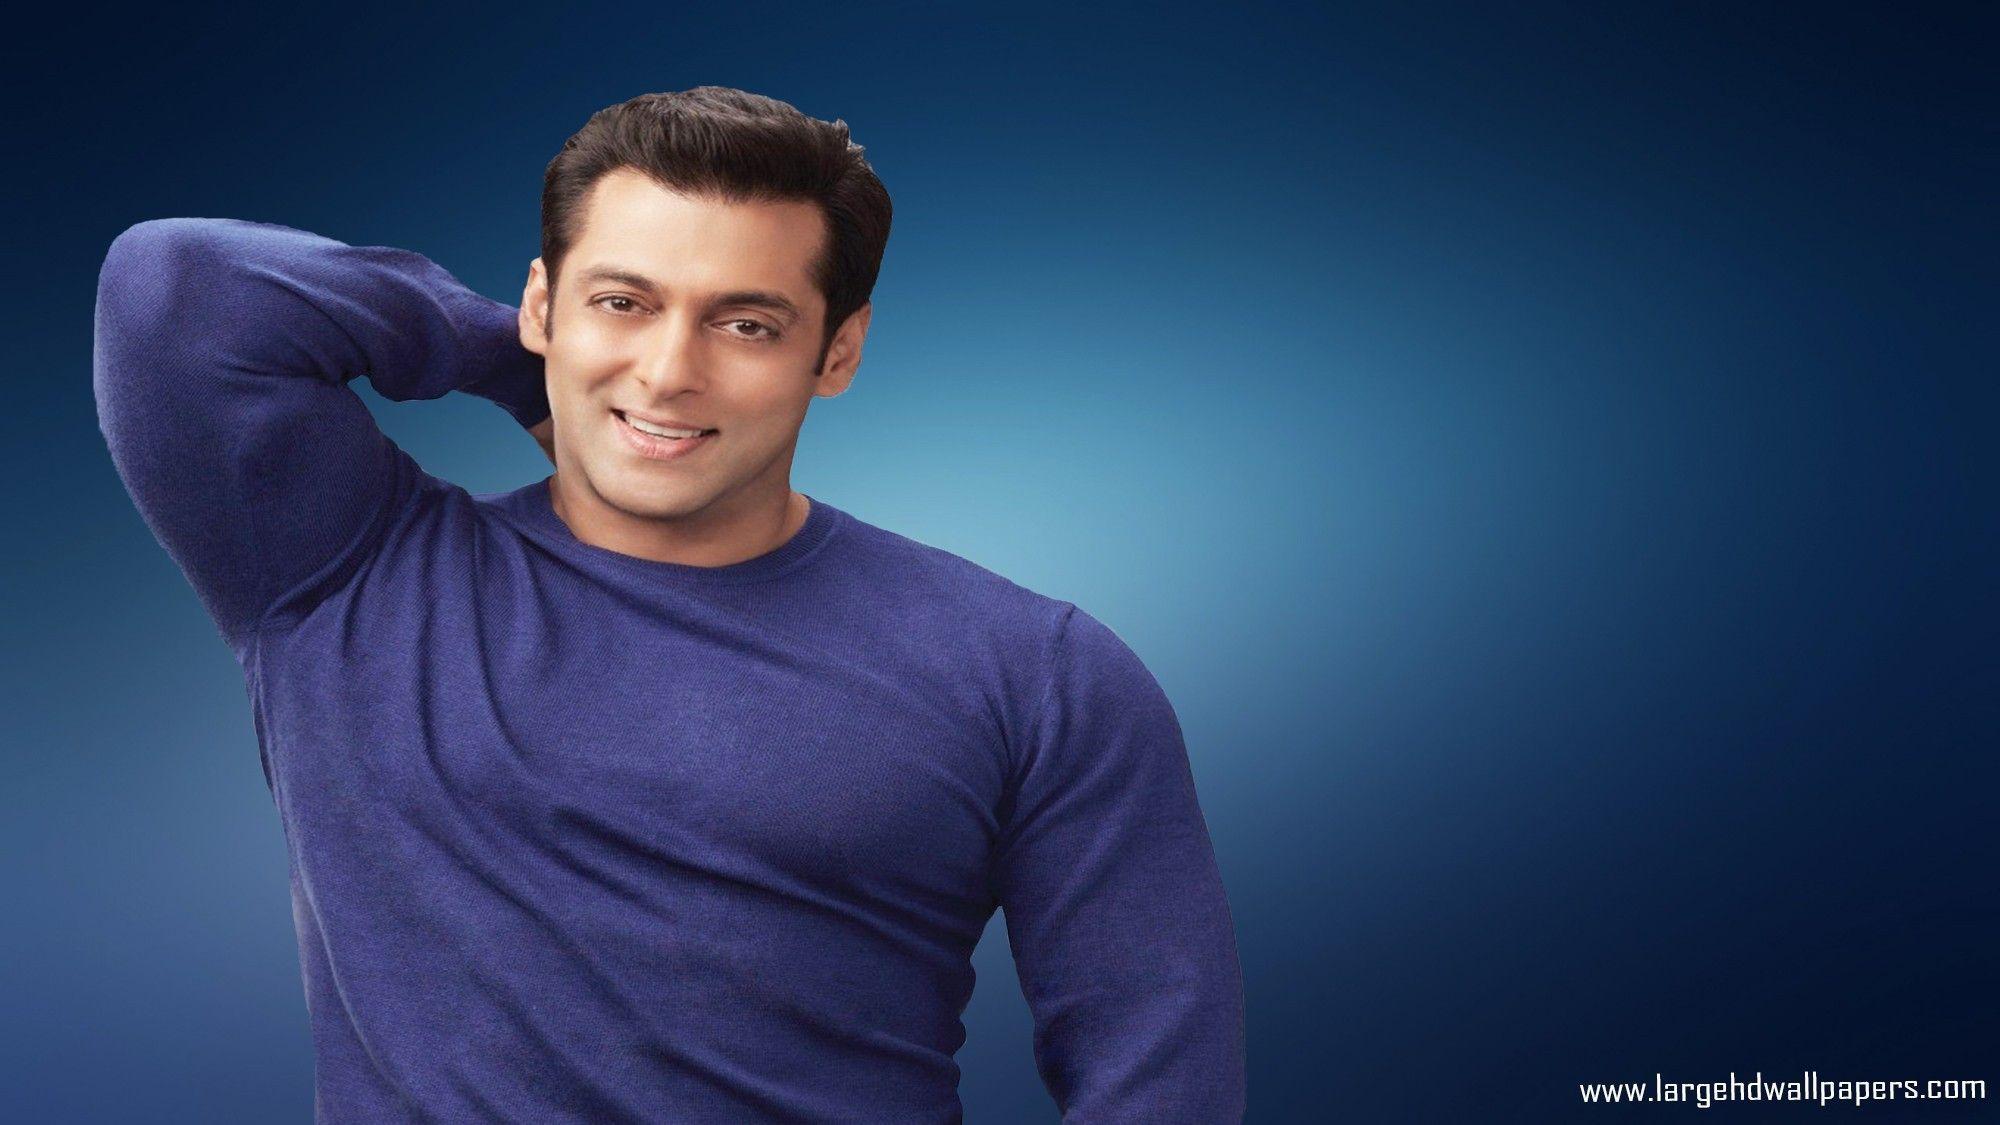 Salman Khan HD PC Wallpapers - Top Free Salman Khan HD PC Backgrounds -  WallpaperAccess